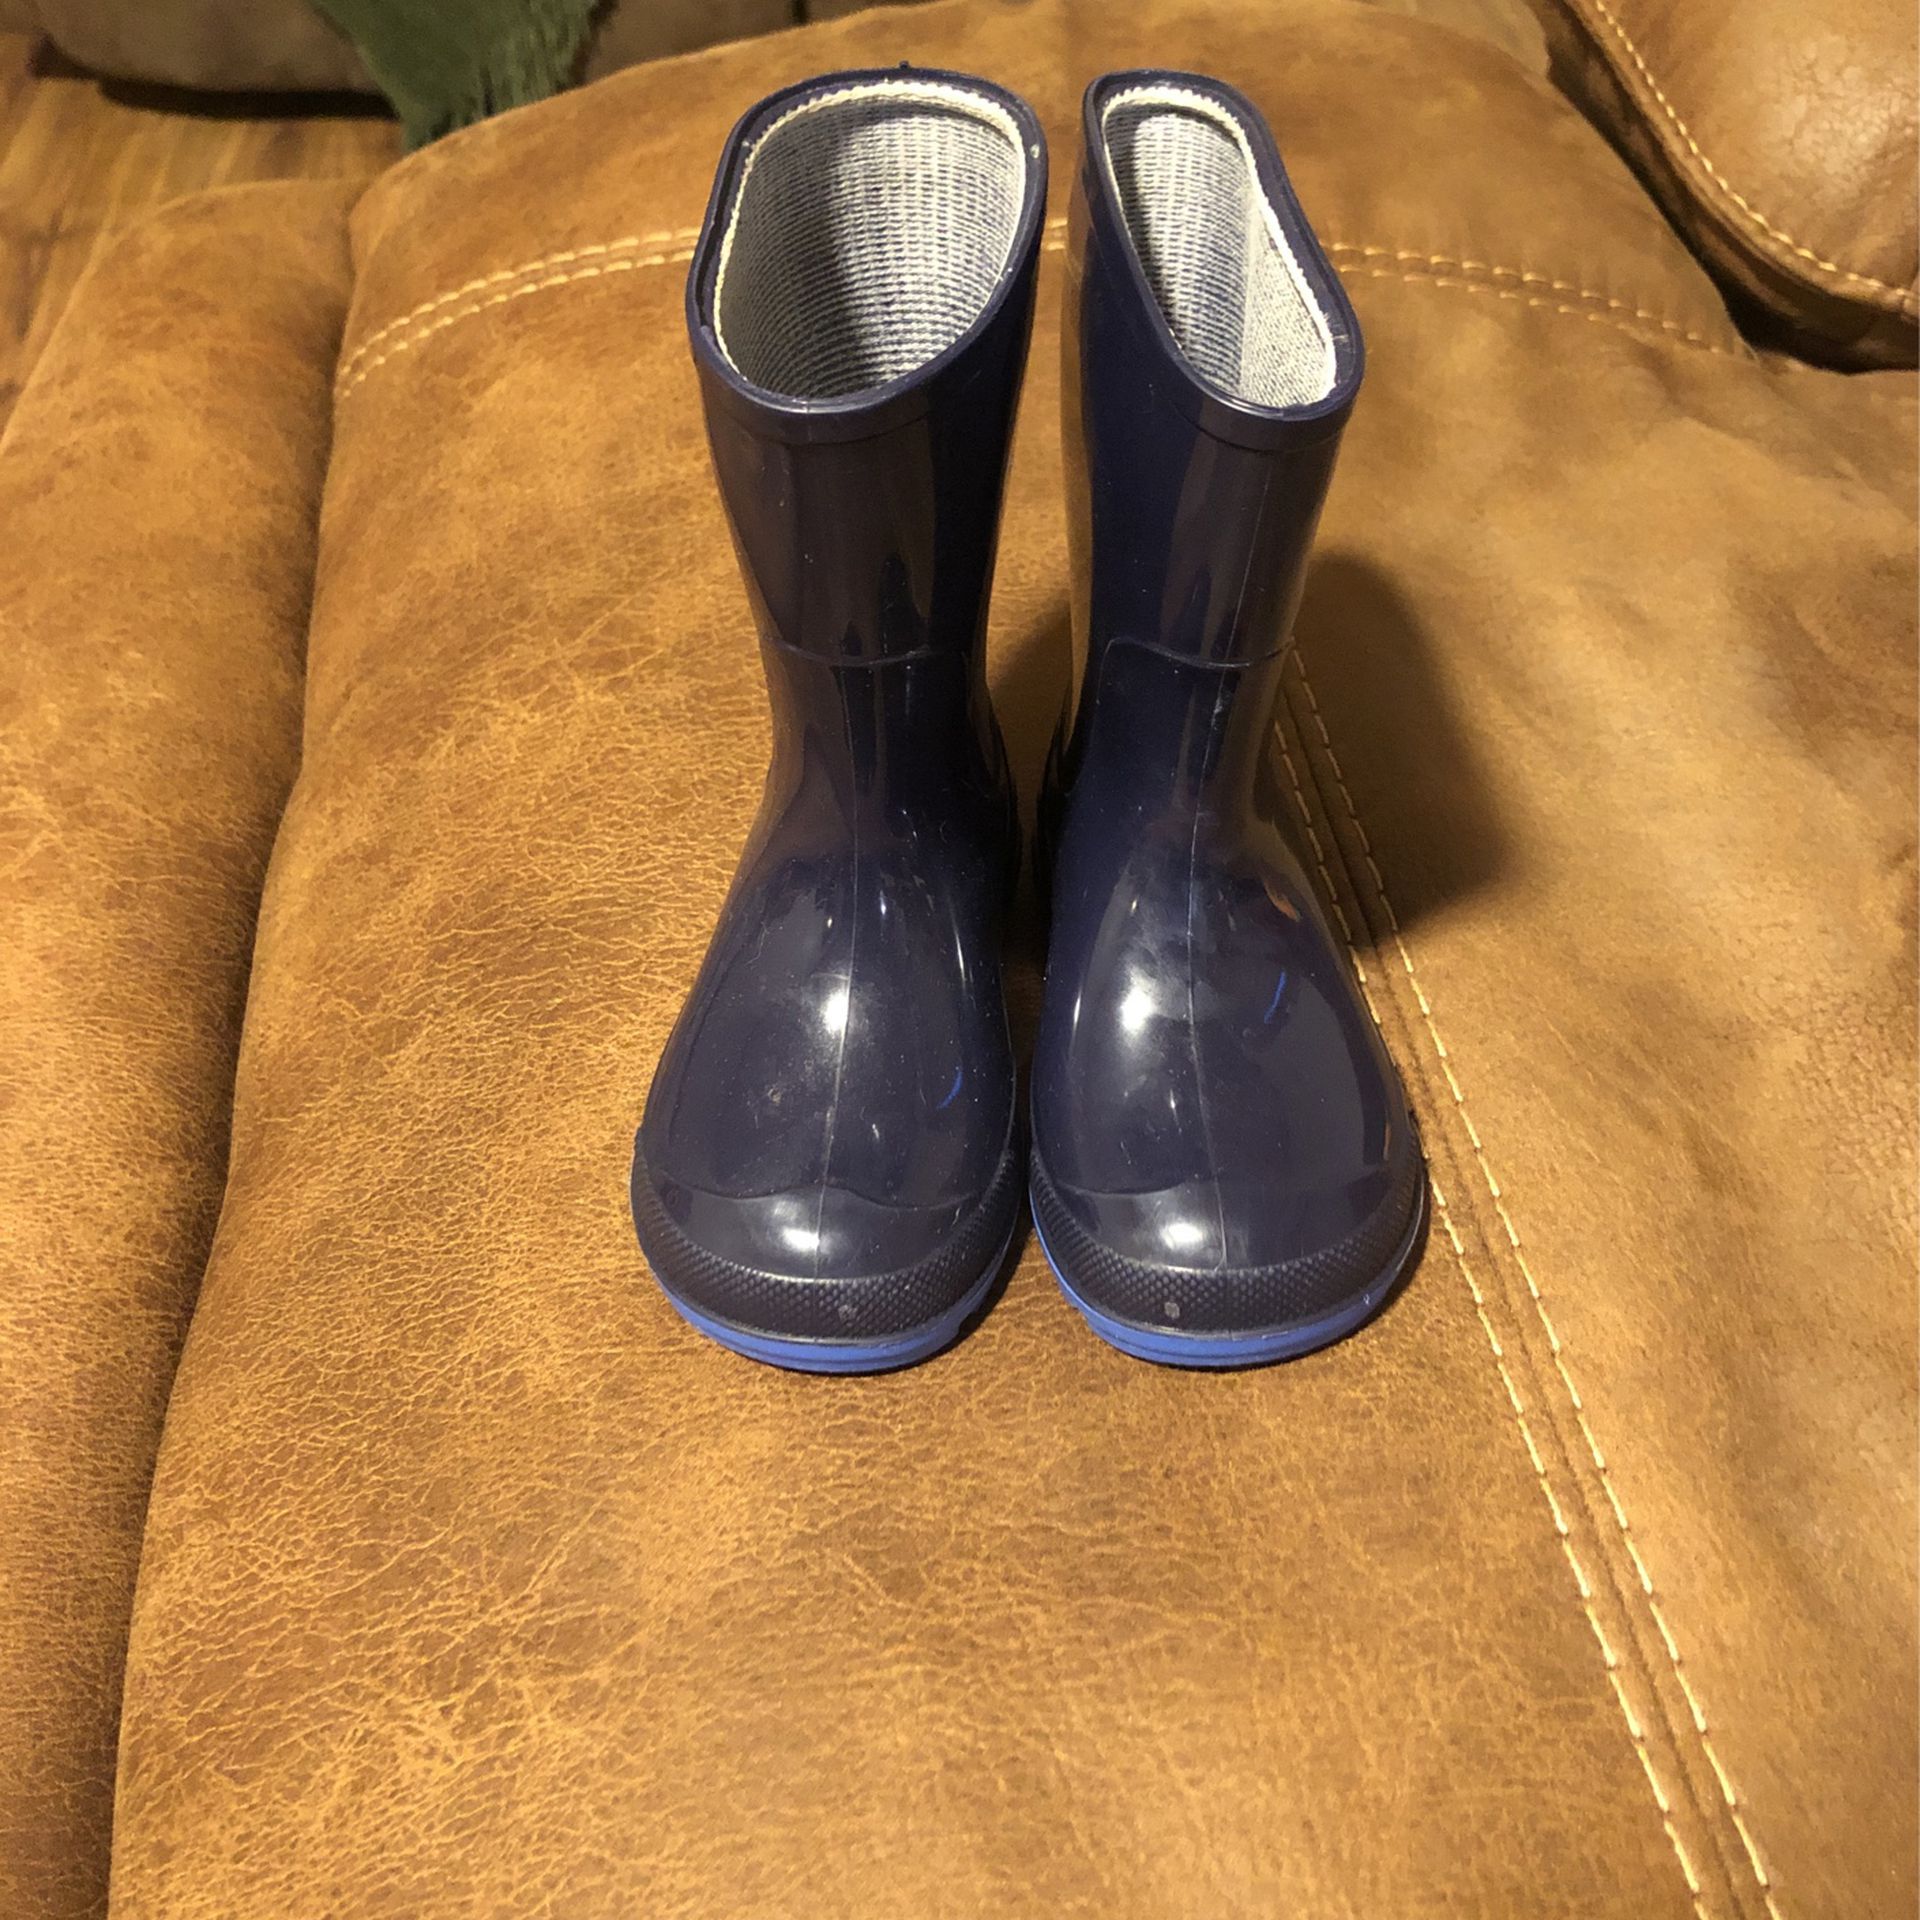 Size 5/6 Blue Rain Boots